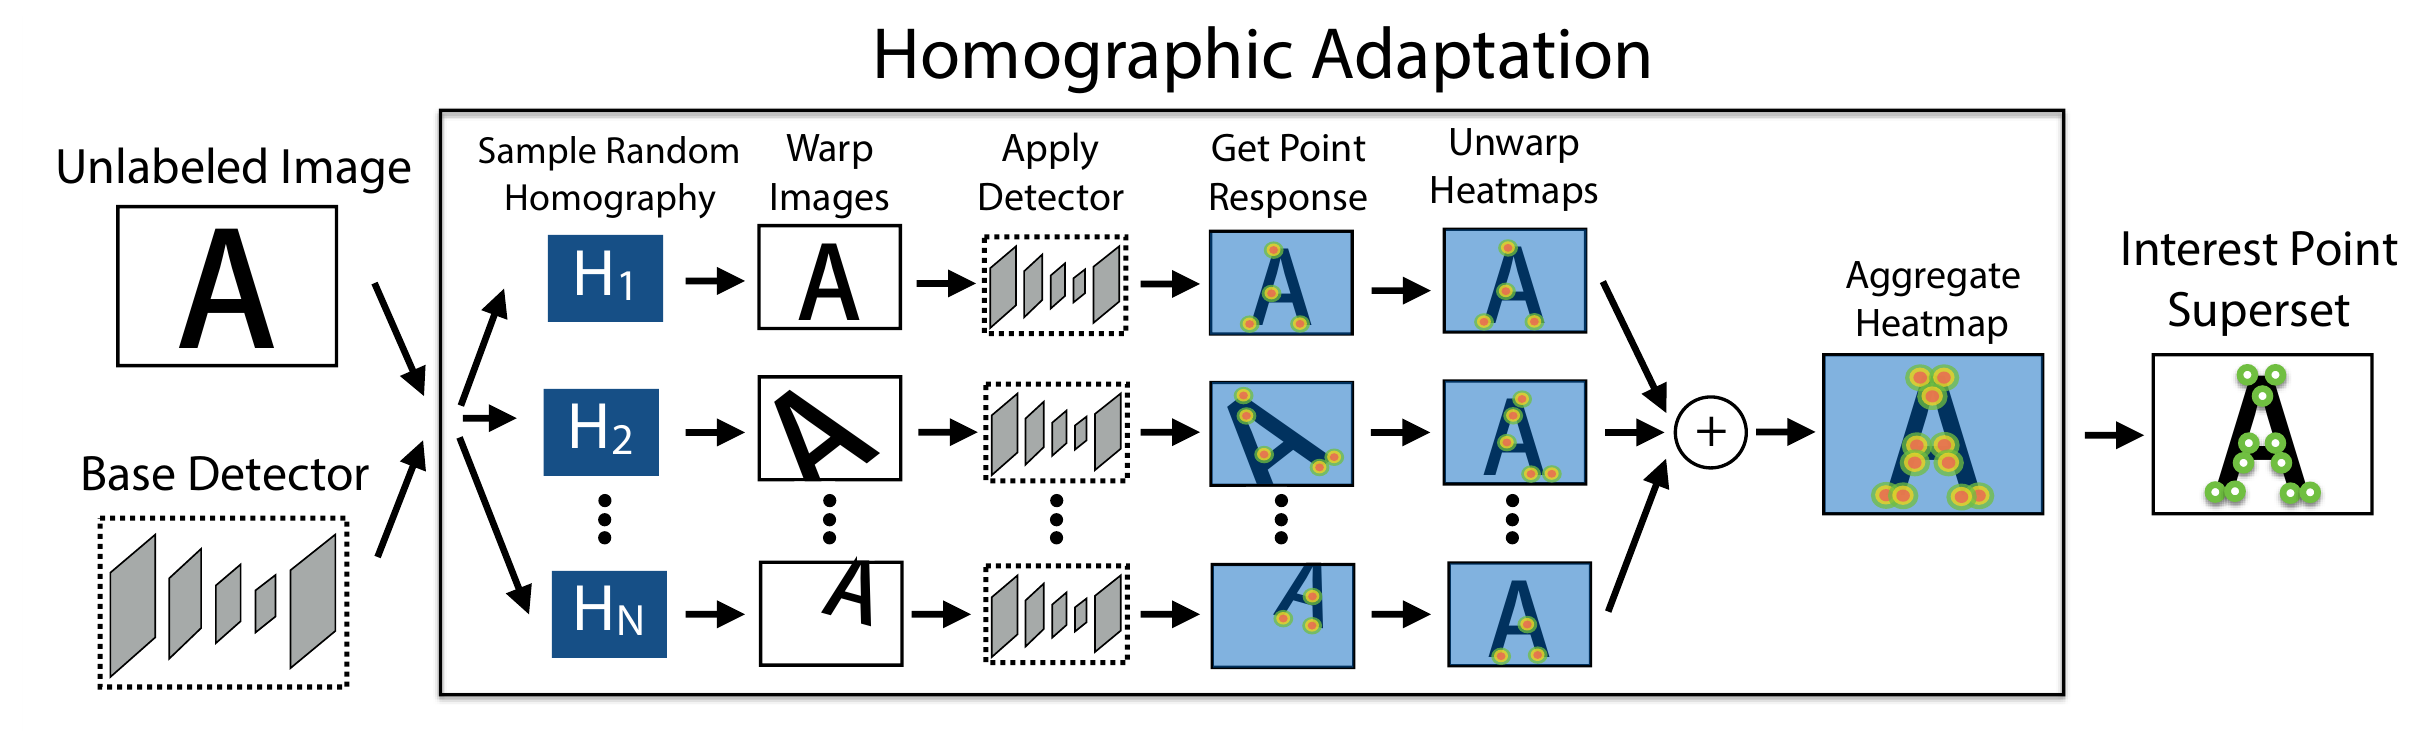 Homography adaptation схема, картинка из статьи